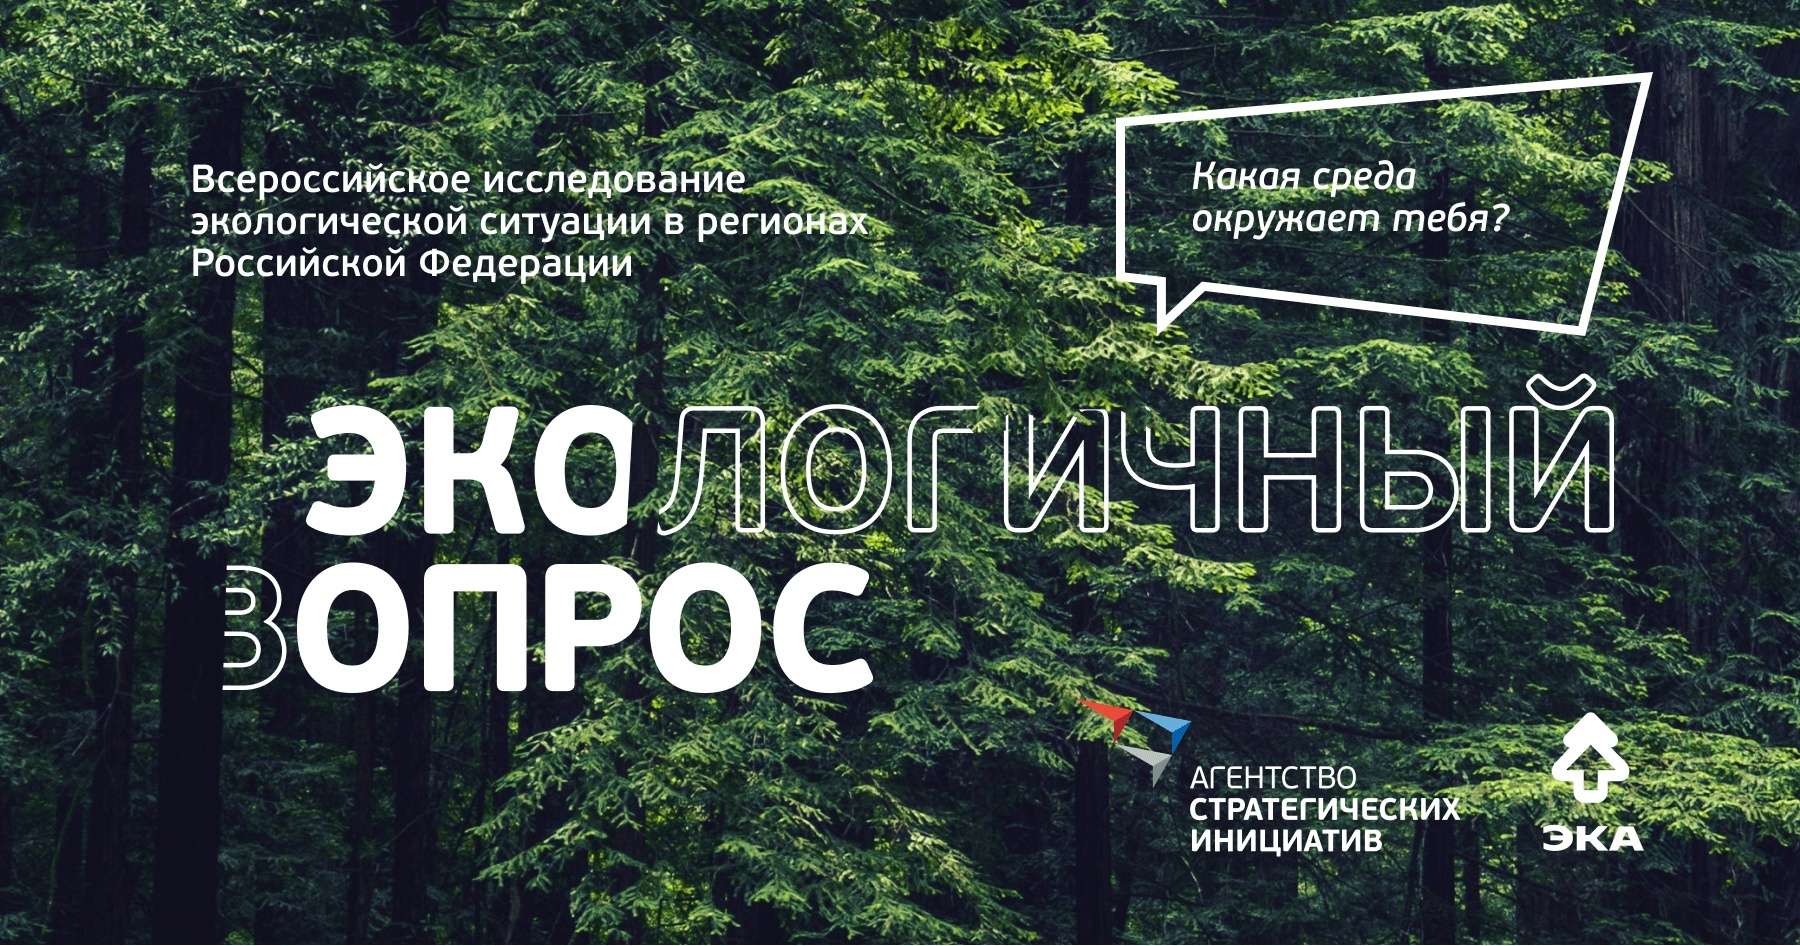 Агентство стратегических инициатив совместно с Движением «ЭКА» проводят «Экологичный опрос» среди жителей страны для оценки экологической ситуации в России